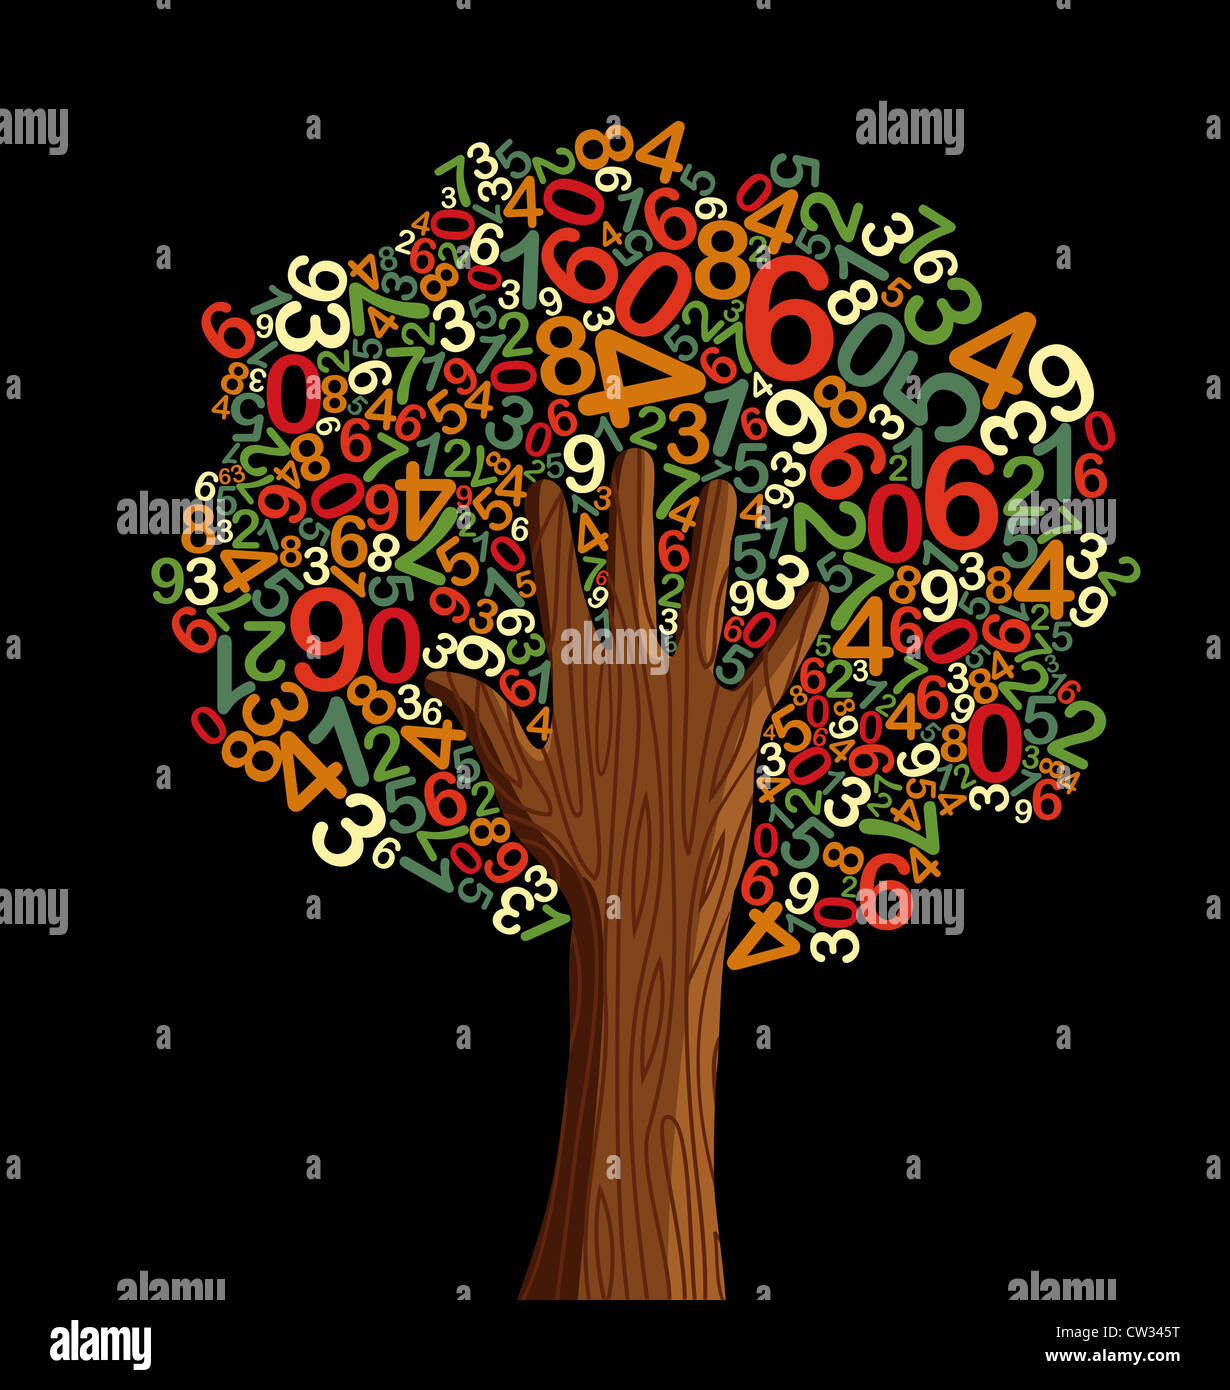 Istruzione scolastica concept tree fatta con lettere e mano umana. File vettoriale stratificata per una facile manipolazione e colorazione personalizzata. Foto Stock